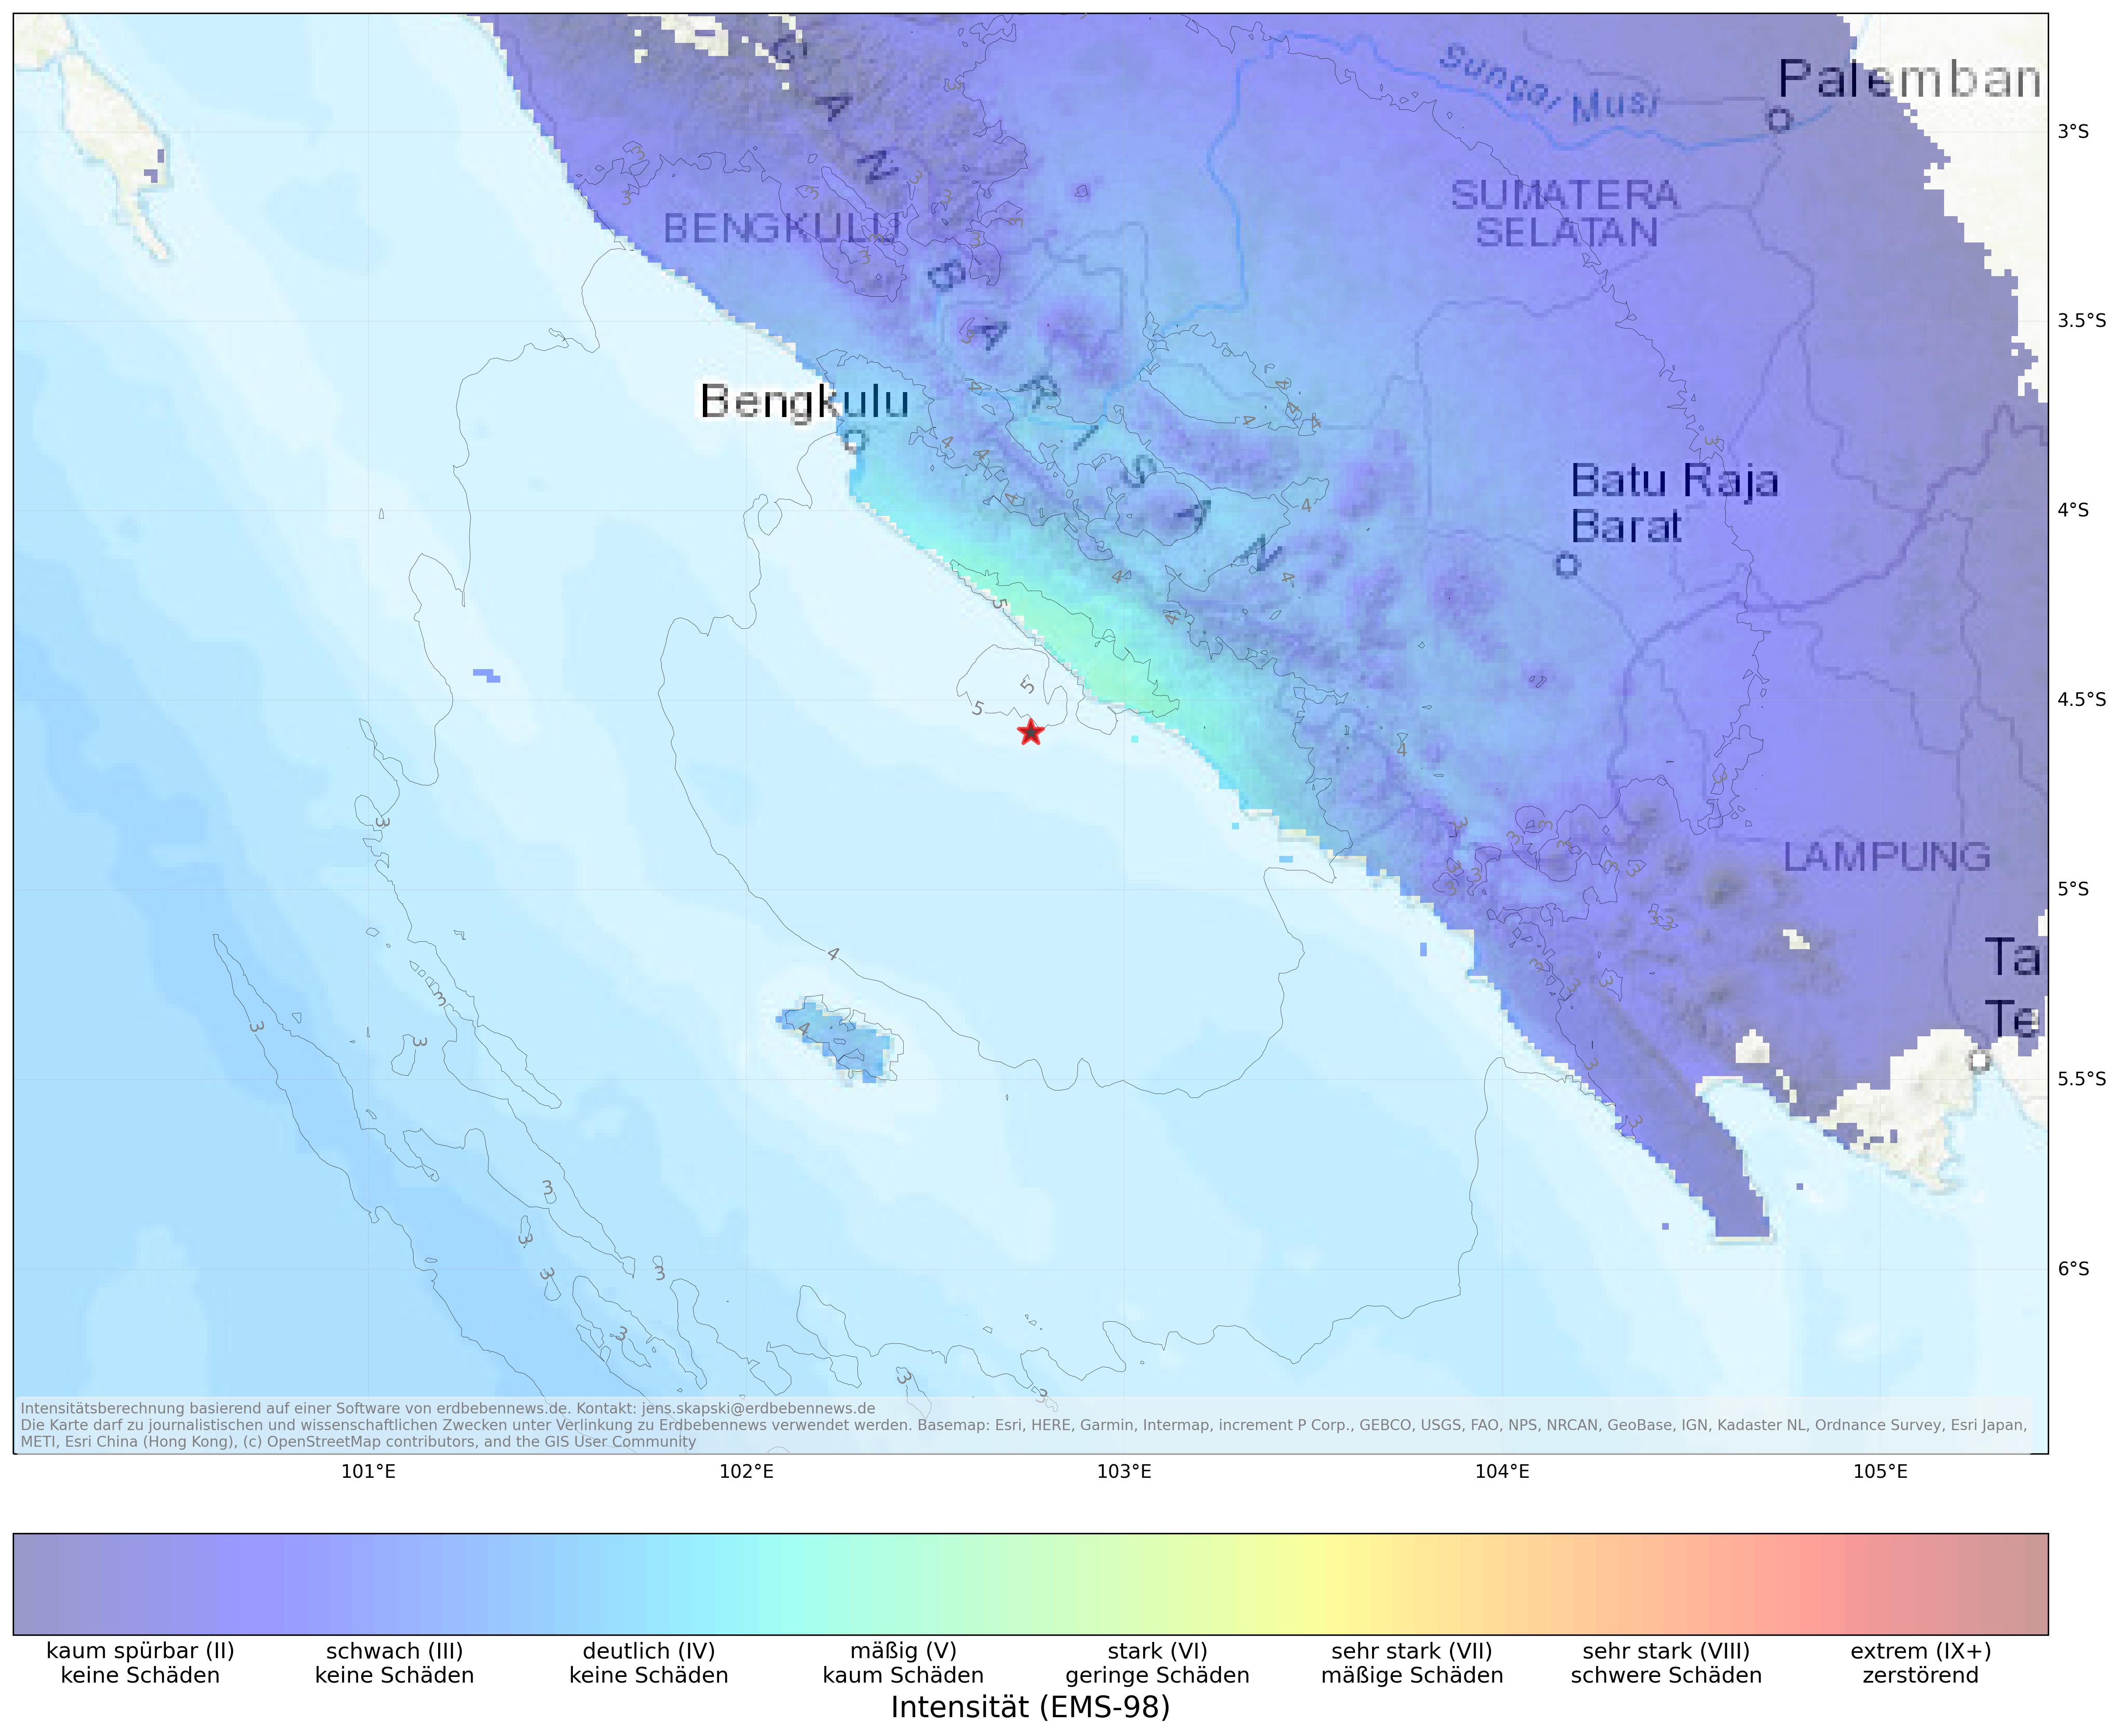 Berechnete Intensität (ShakeMap) des Erdbebens der Stärke 5.3 am 23. März, 14:20 Uhr in Indonesien